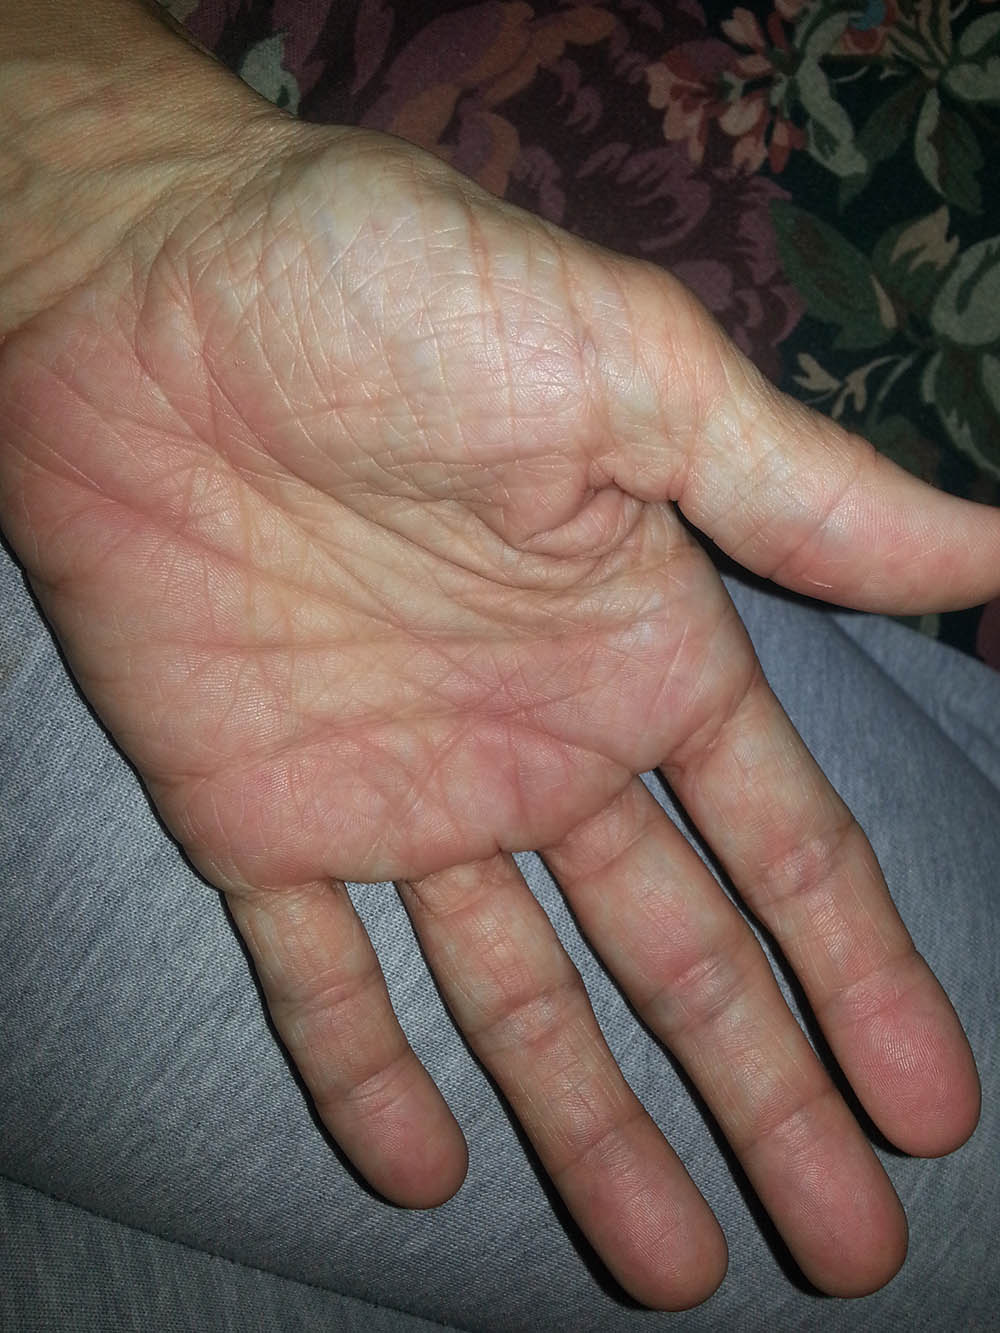 red swollen hand